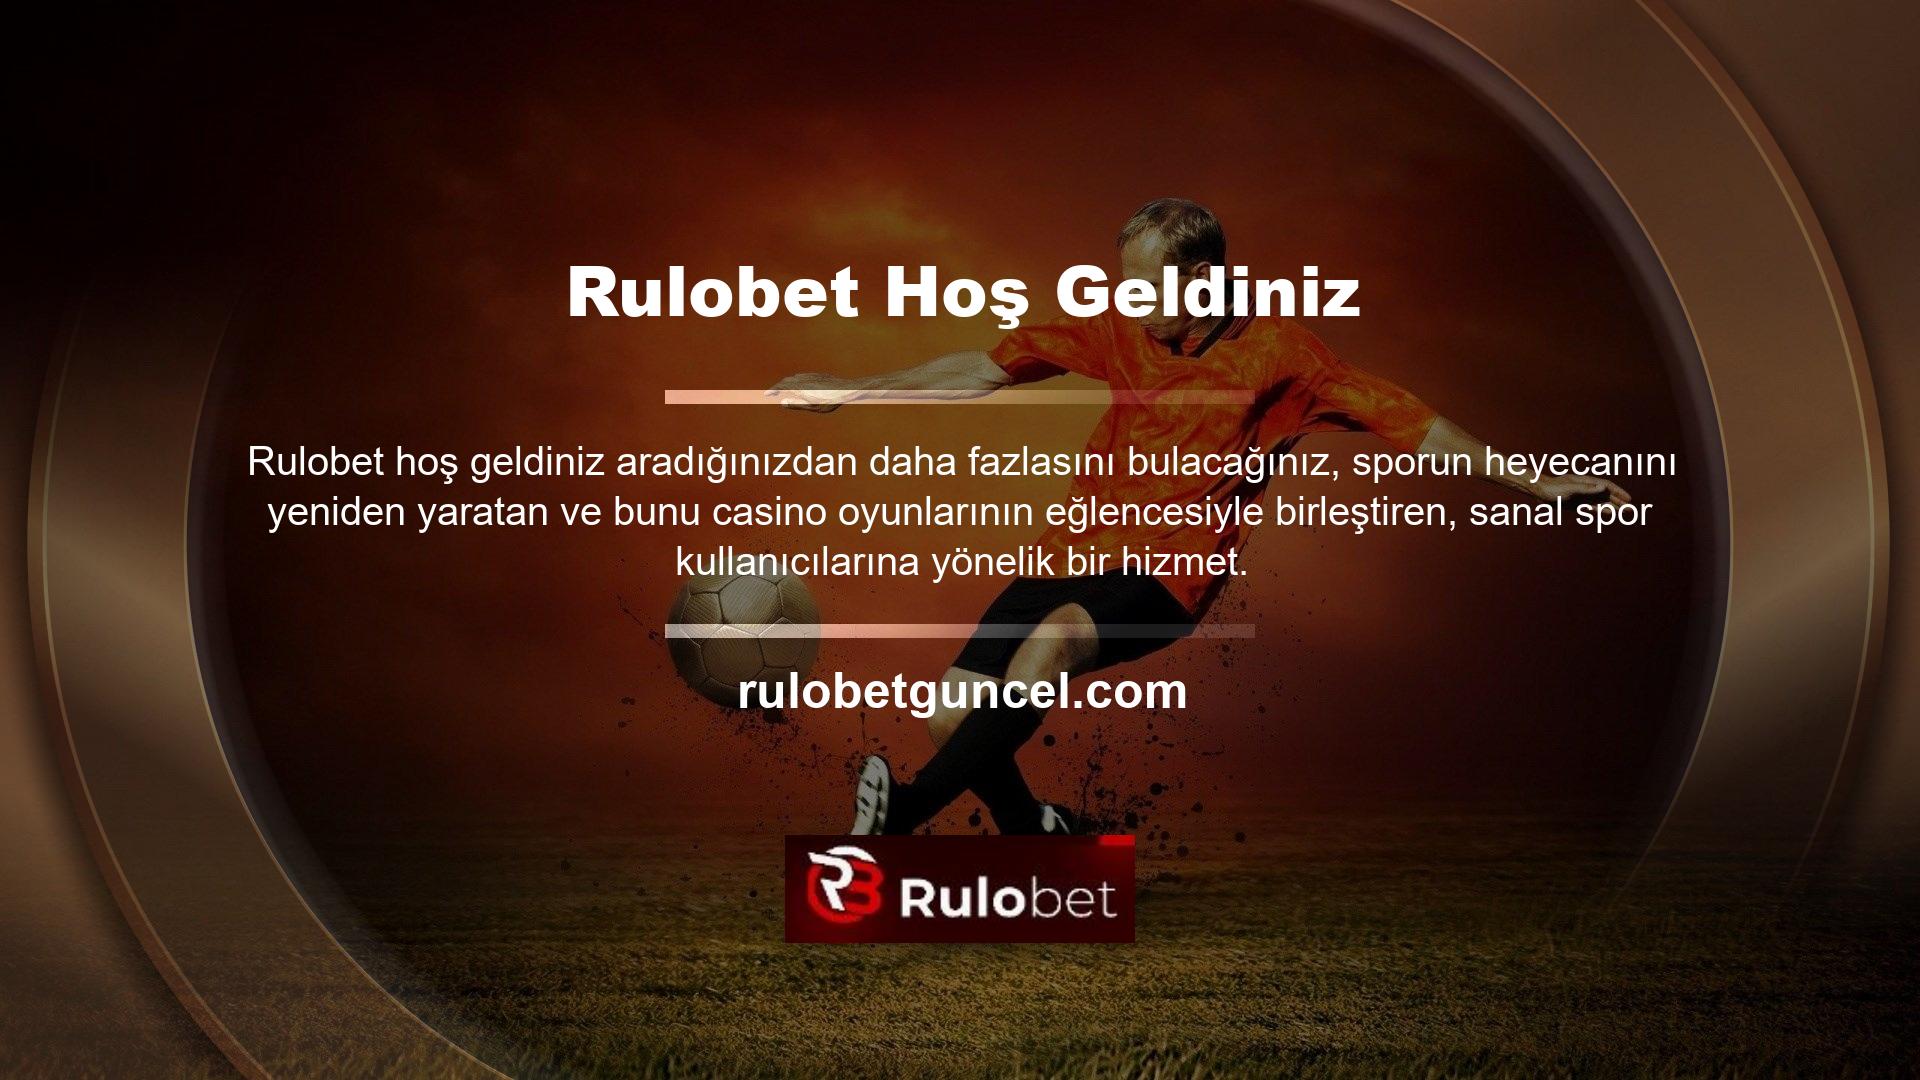 Rulobet bir spor oyunu olarak geliştirildi, neredeyse hepsini sağlıyoruz